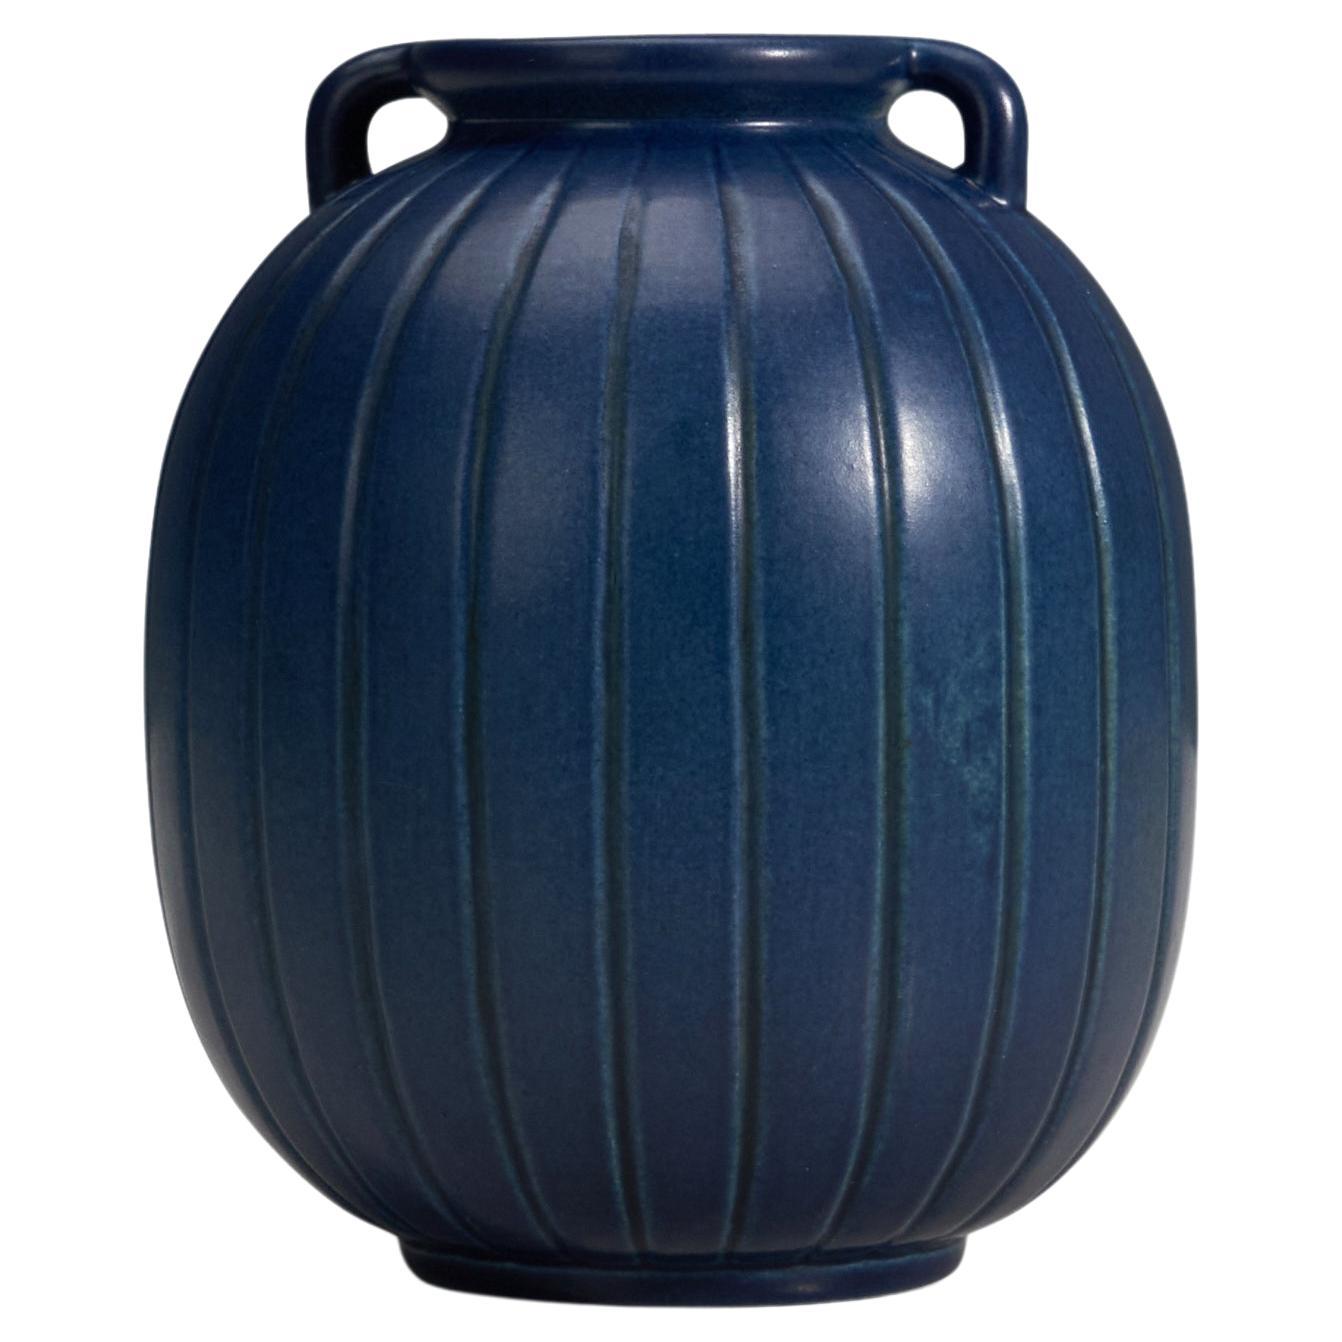 Peter Ipsens Enke, Vase, Blue Glazed Stoneware, Denmark, 1940s